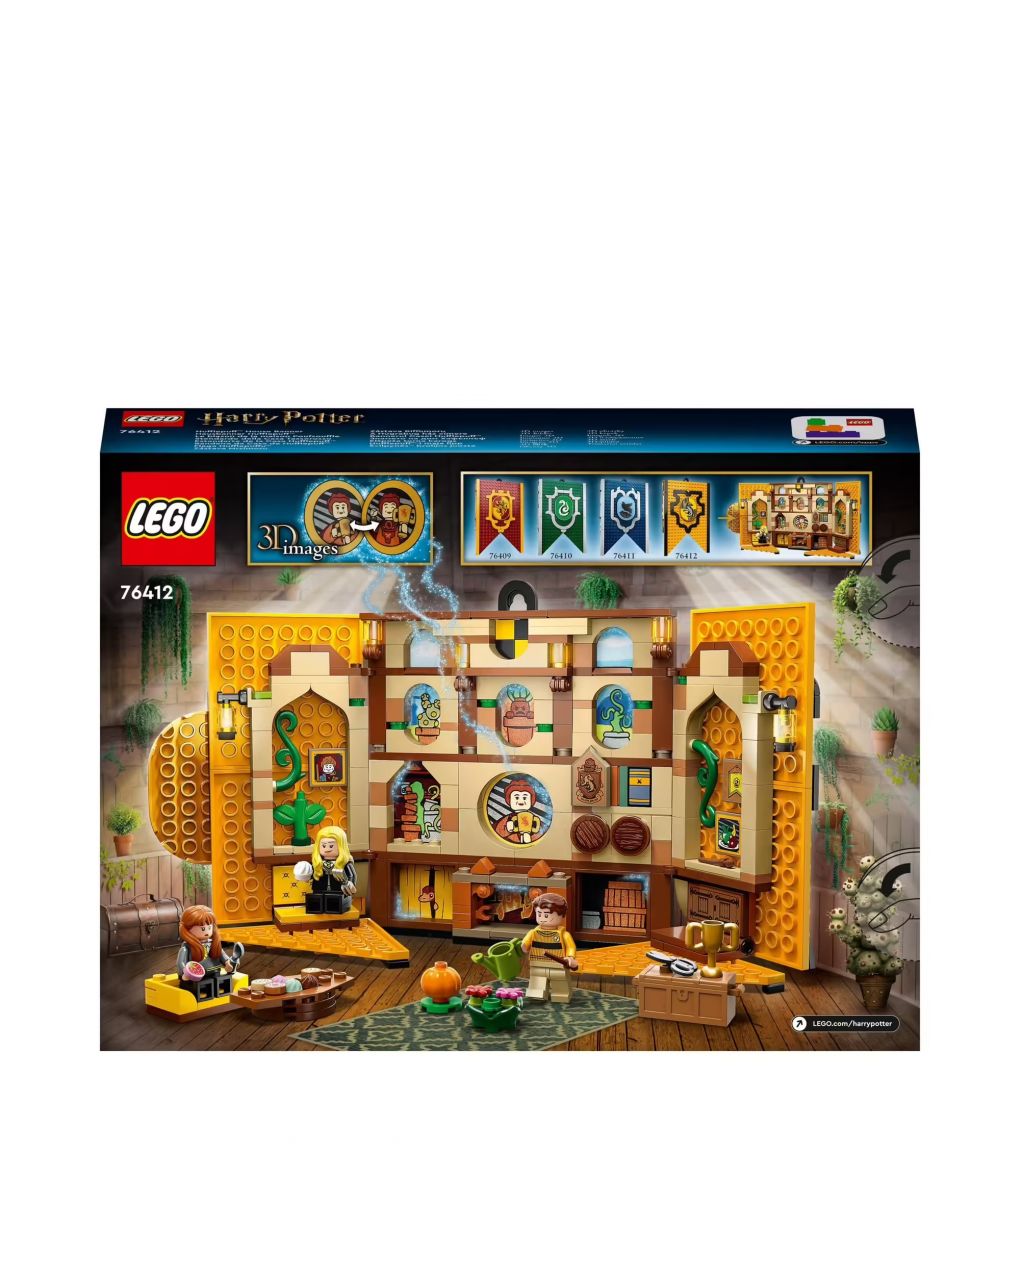 Stendardo della casa tassorosso da parete - sala comune castello di hogwarts 76412 - lego harry potter - LEGO